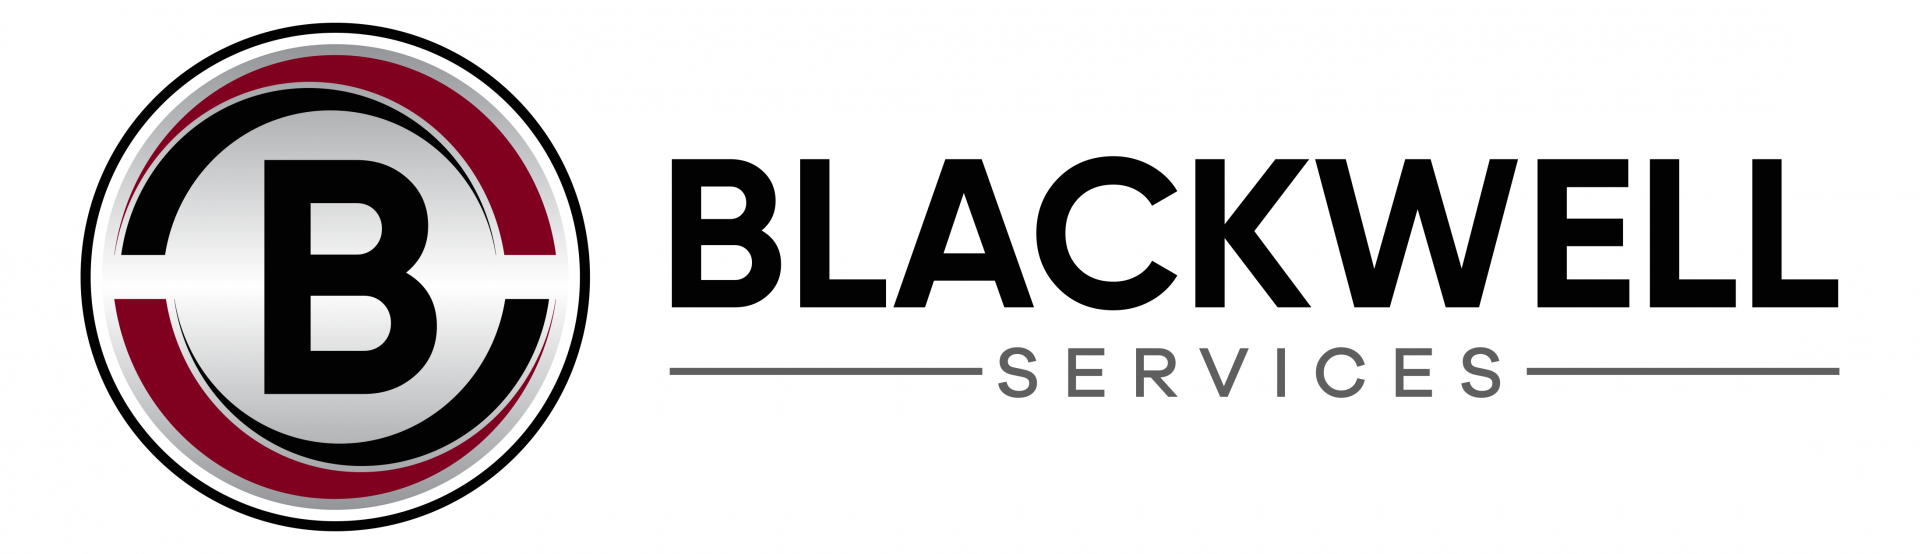 Blackwell Services company logo